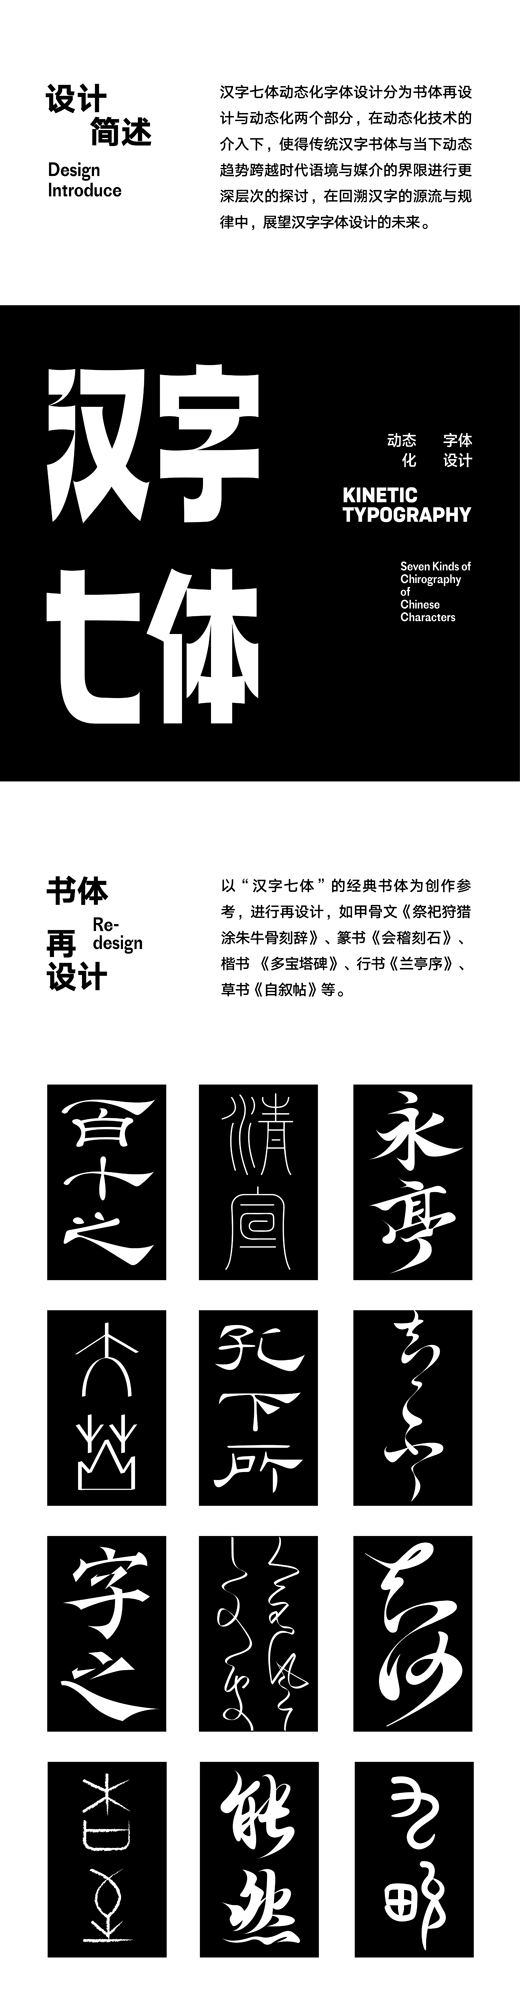 《汉字七体动态化字体设计》1